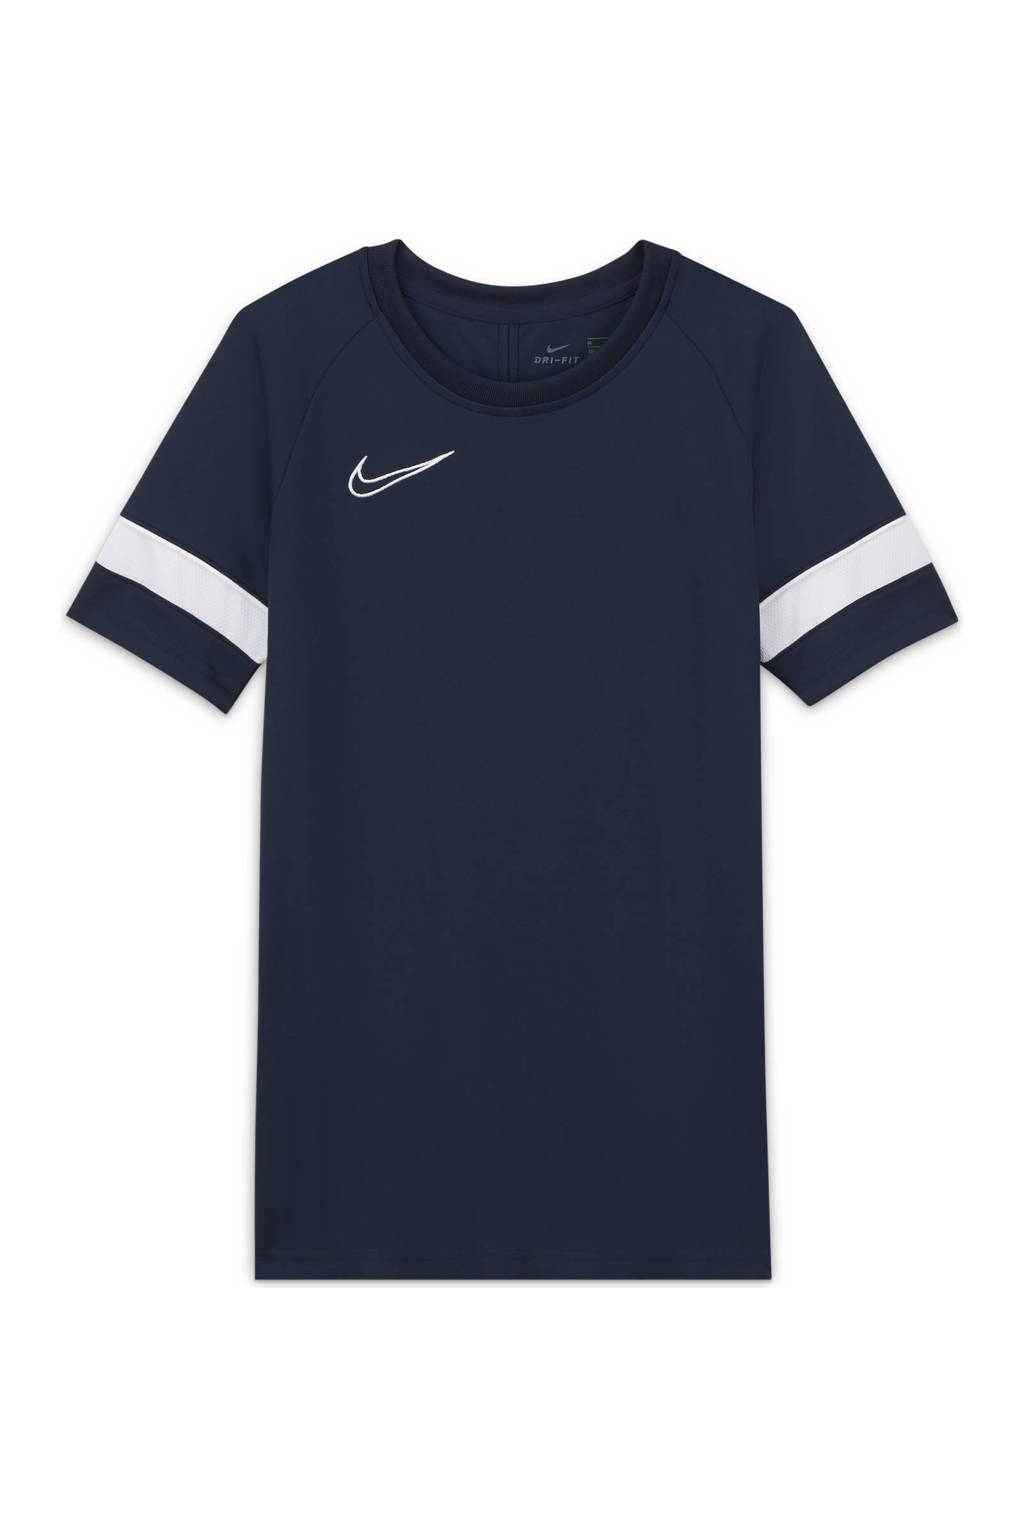 Donkerblauw en witte jongens en meisjes Nike Junior voetbalshirt van polyester met logo dessin, korte mouwen en ronde hals